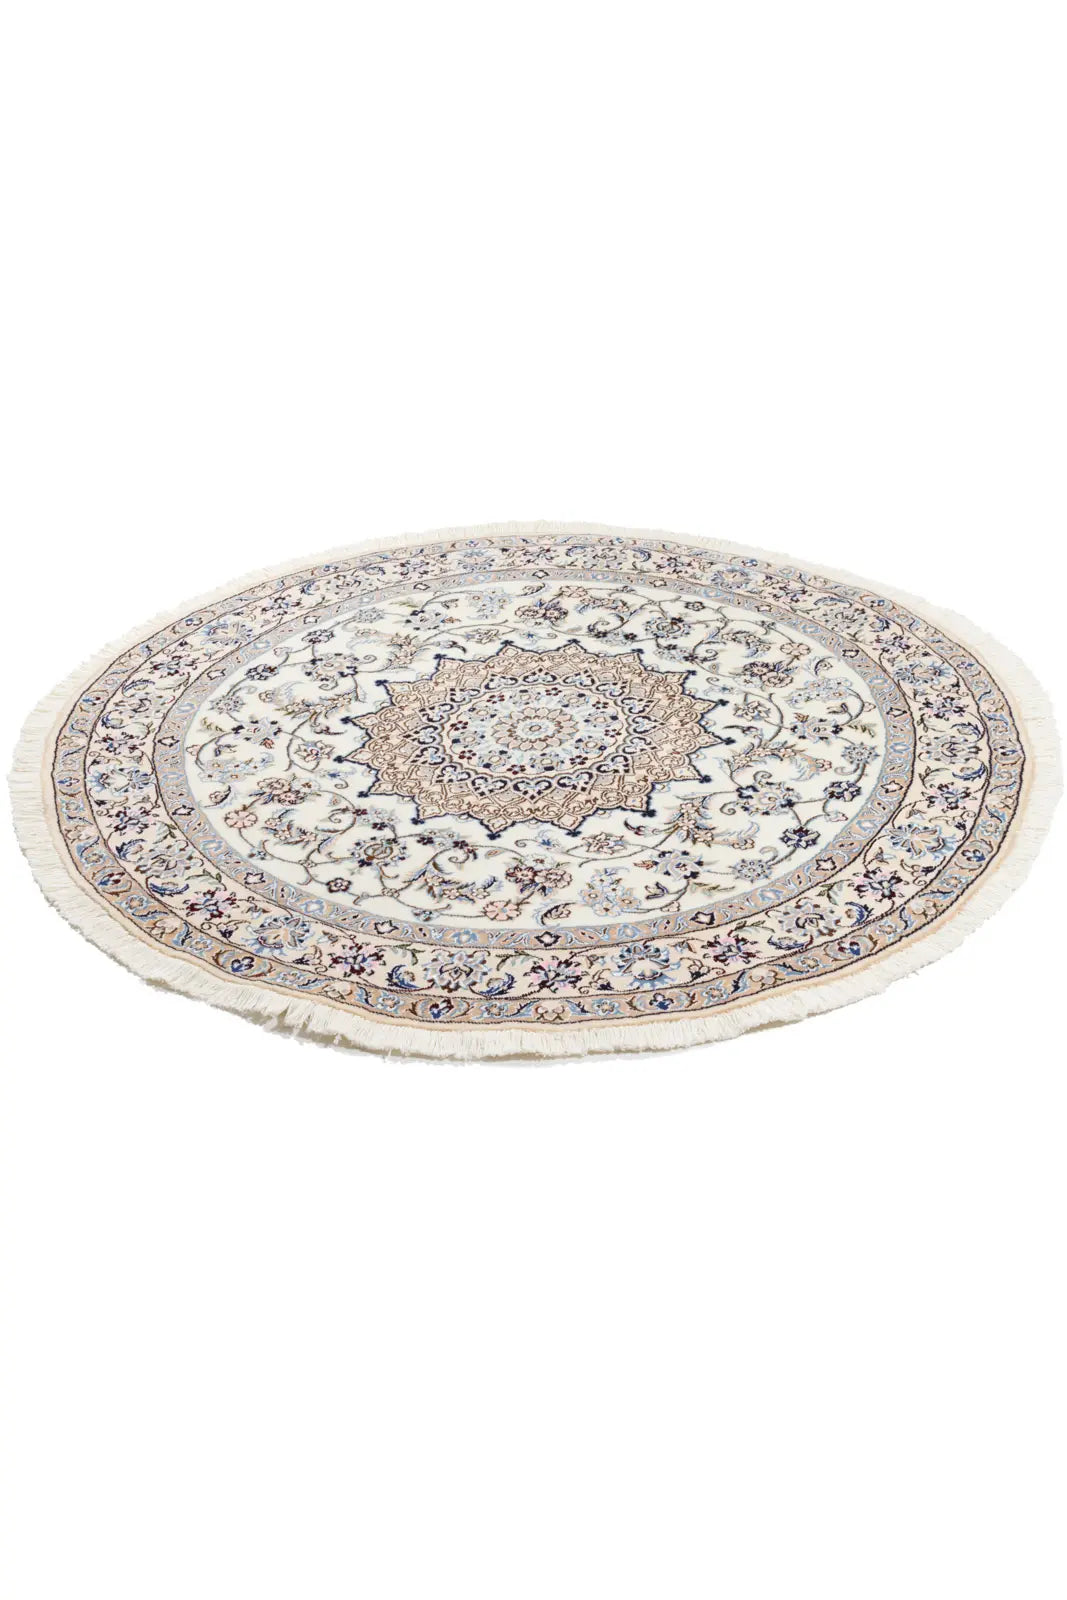 ペルシャ絨毯 円形 ナイン ウール 白